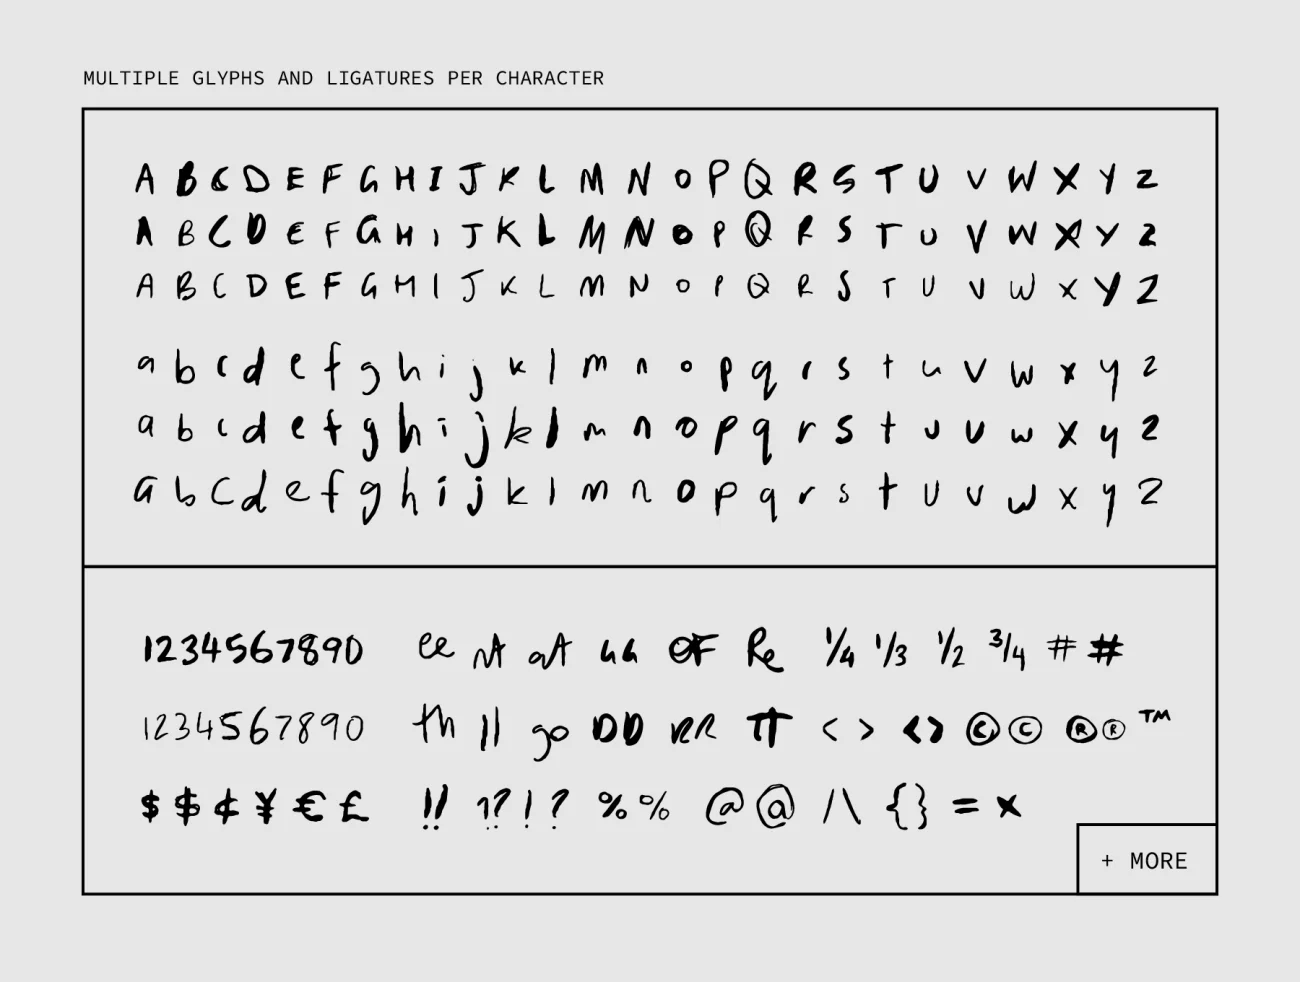 MANIC Erratic Handwritten Font 真实随性凌乱而现实手写英文字体-字体-到位啦UI